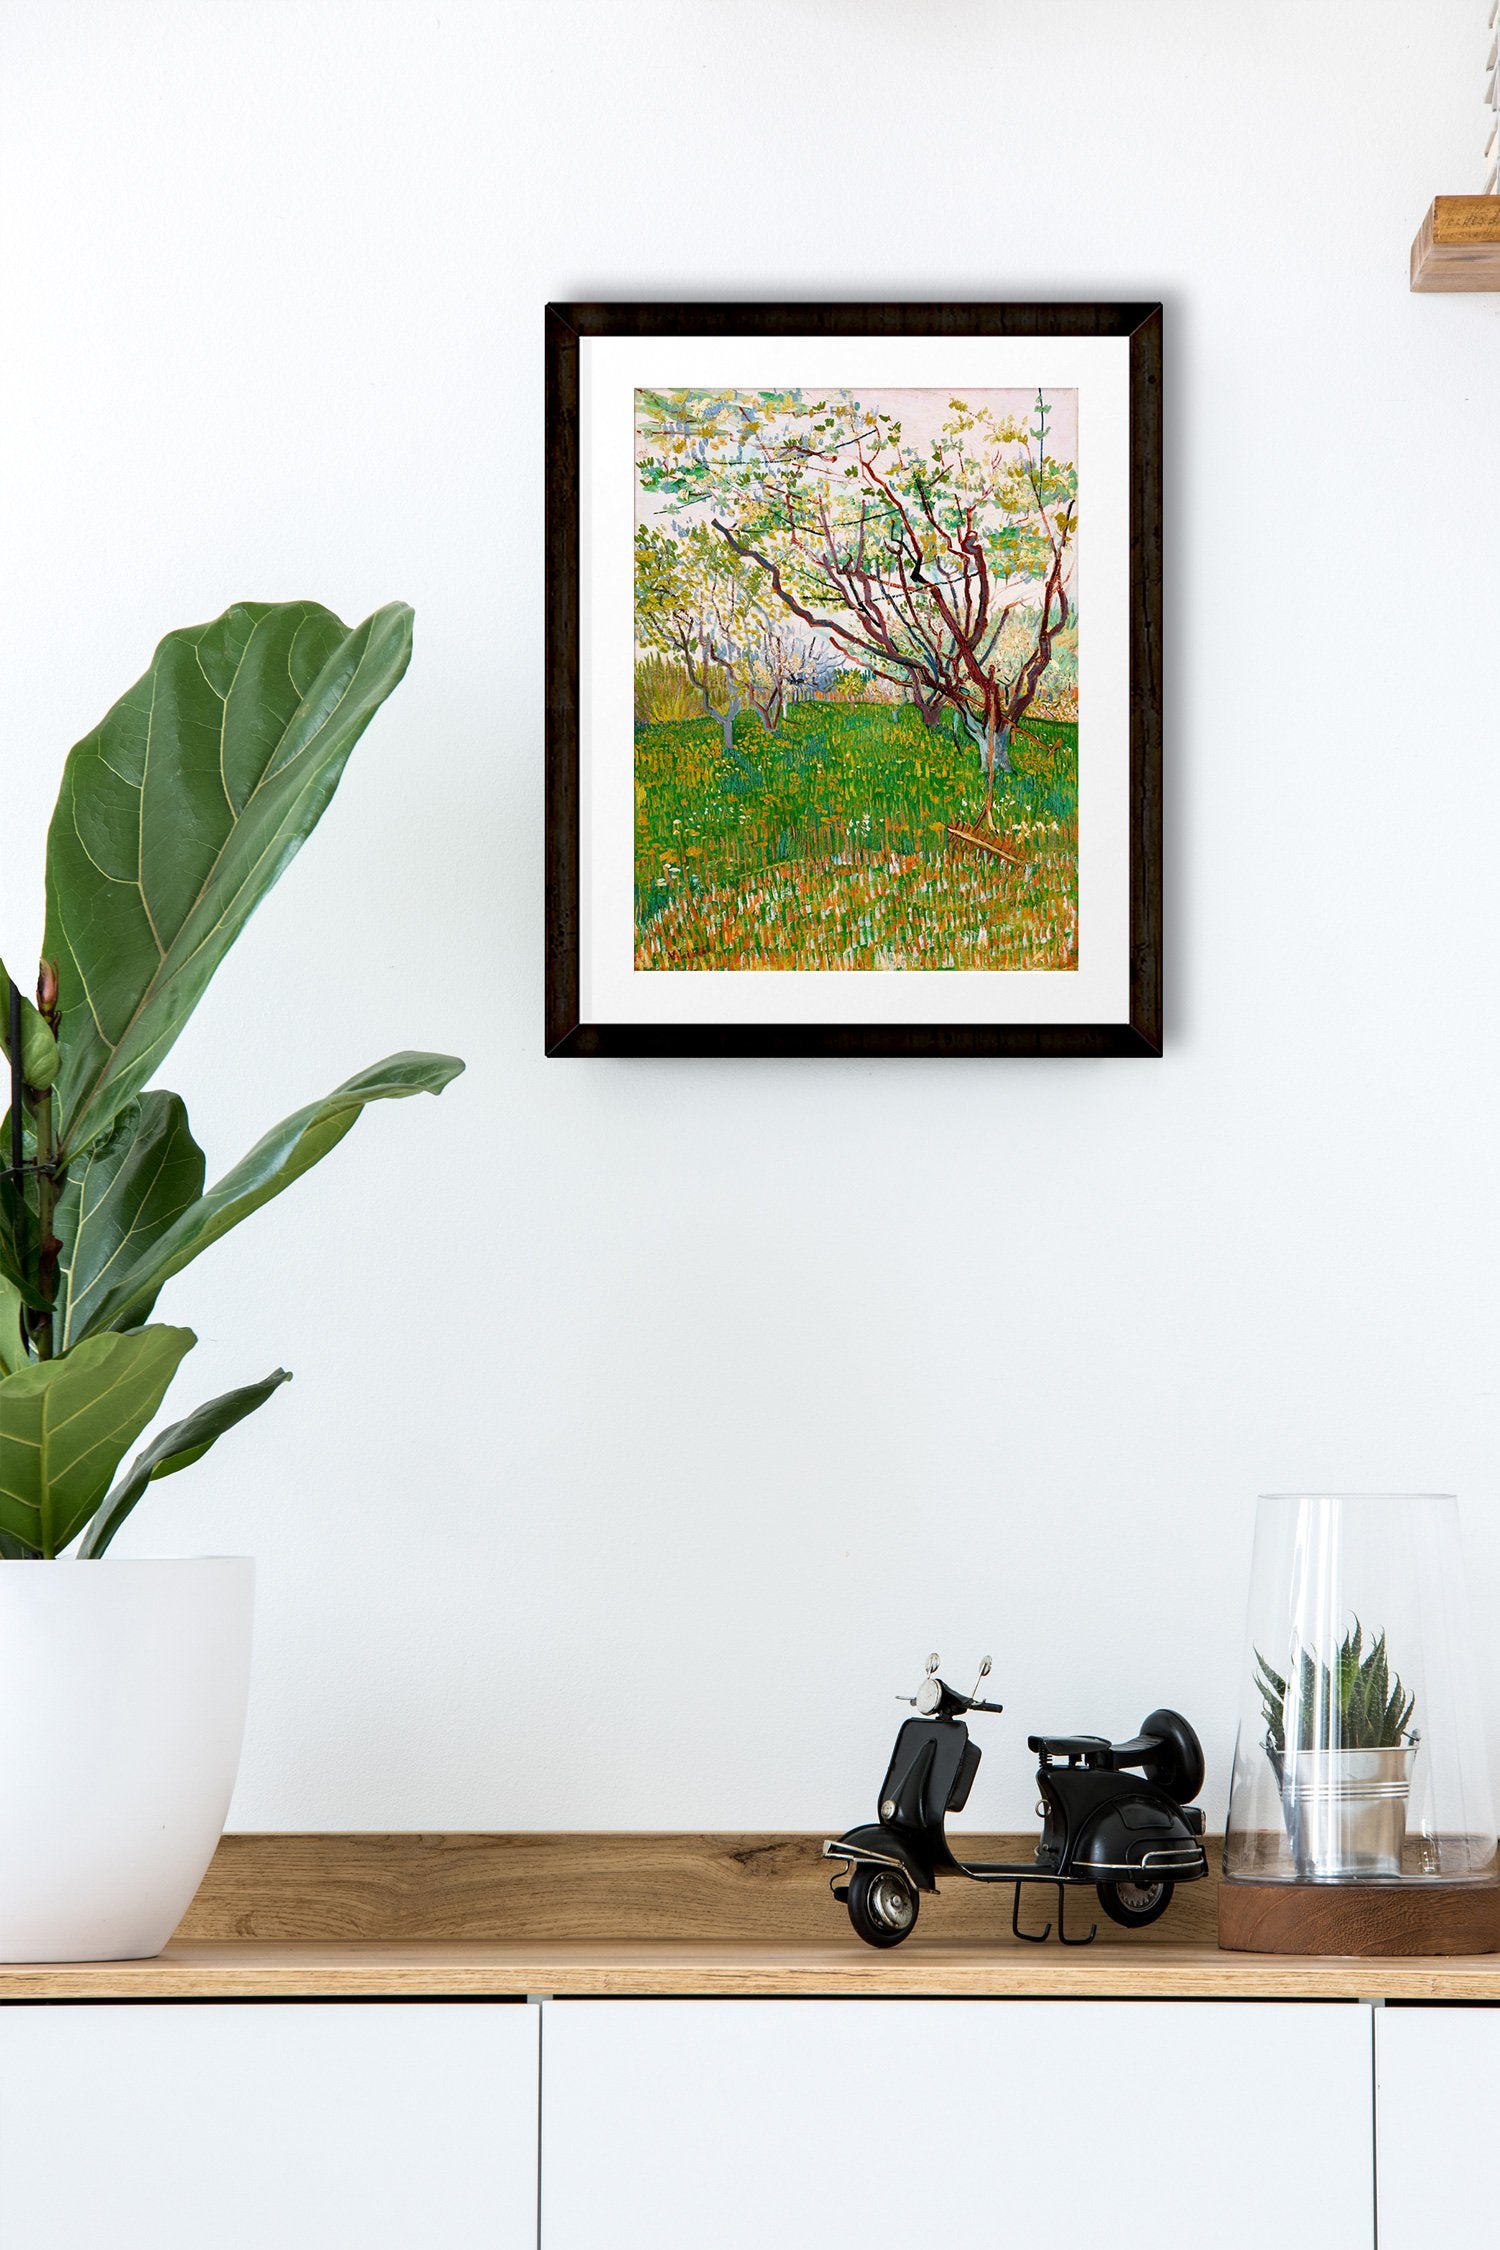 The Flowering Orchard By Van Gogh Painting - Meri Deewar - MeriDeewar